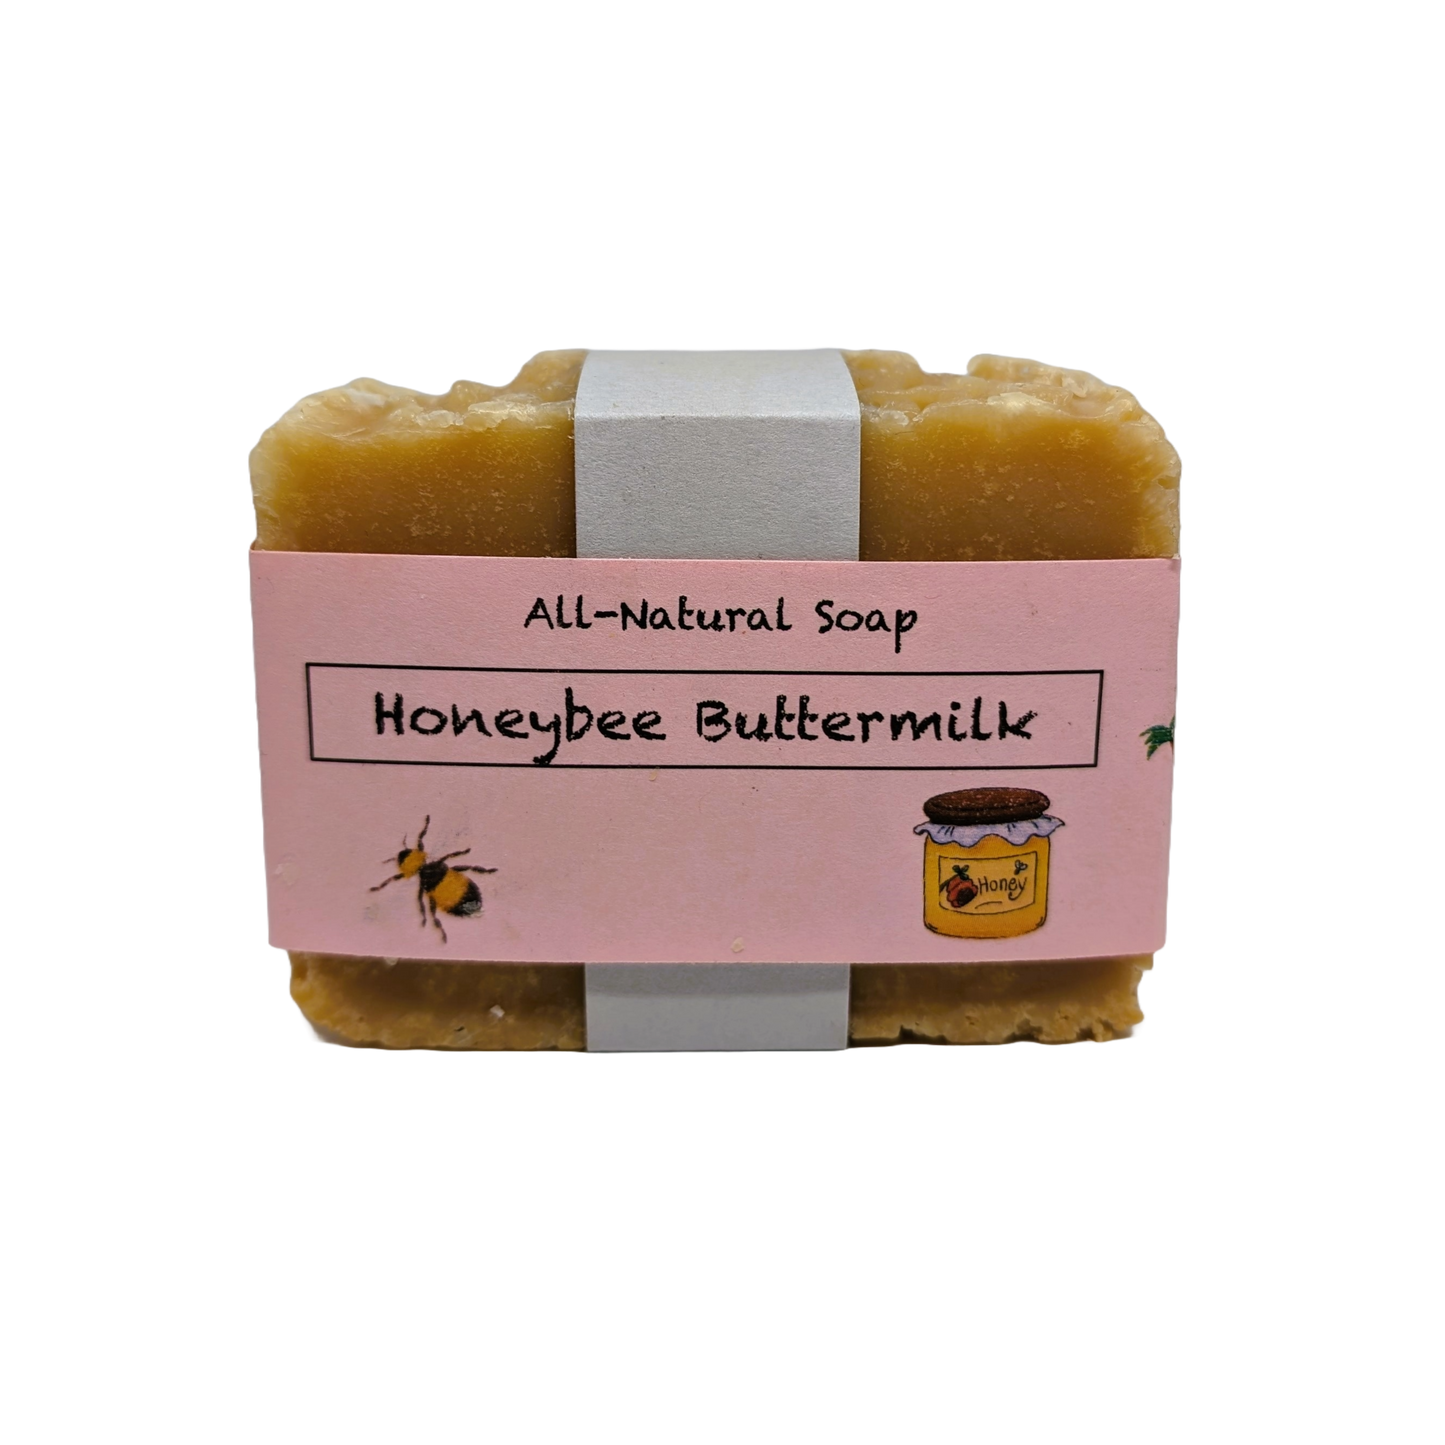 Honeybee Buttermilk